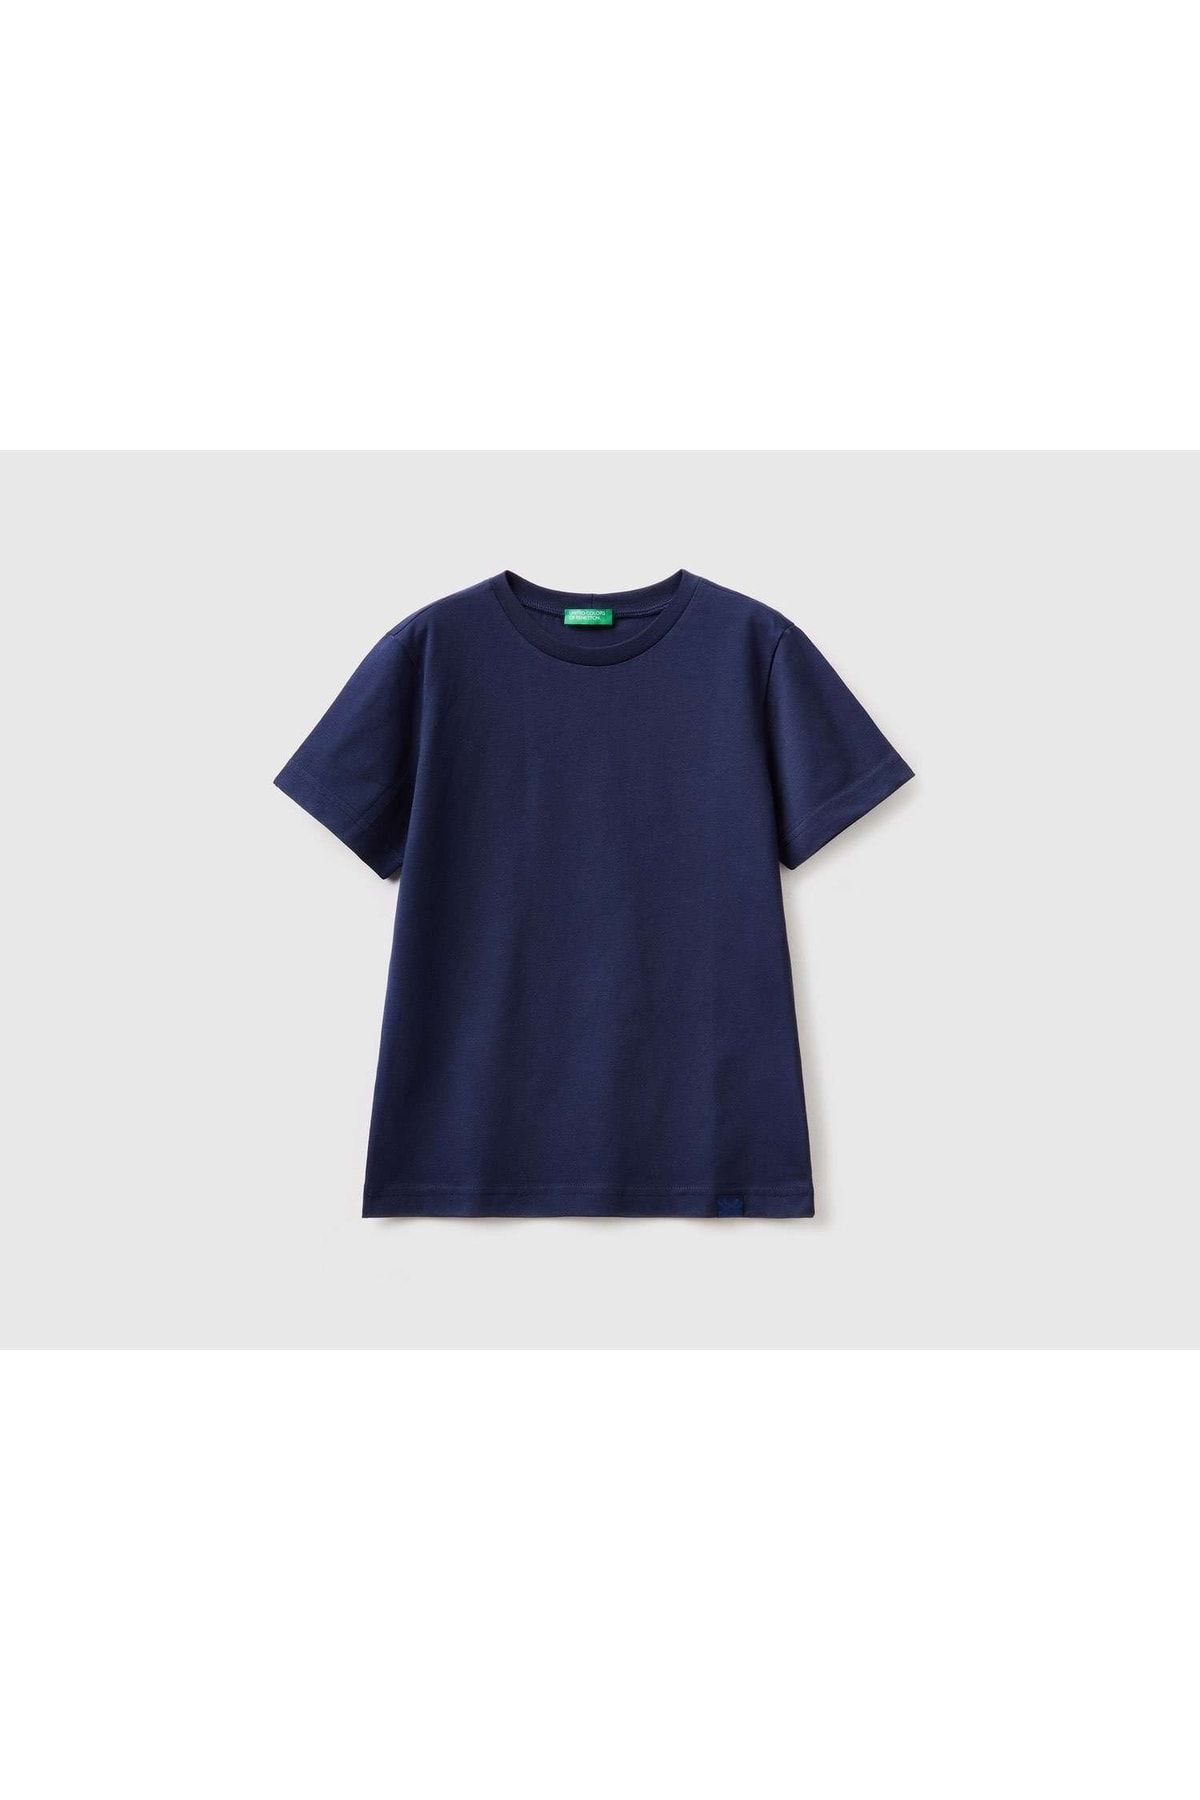 United Colors of Benetton Erkek Çocuk Lacivert Basic T-shirt